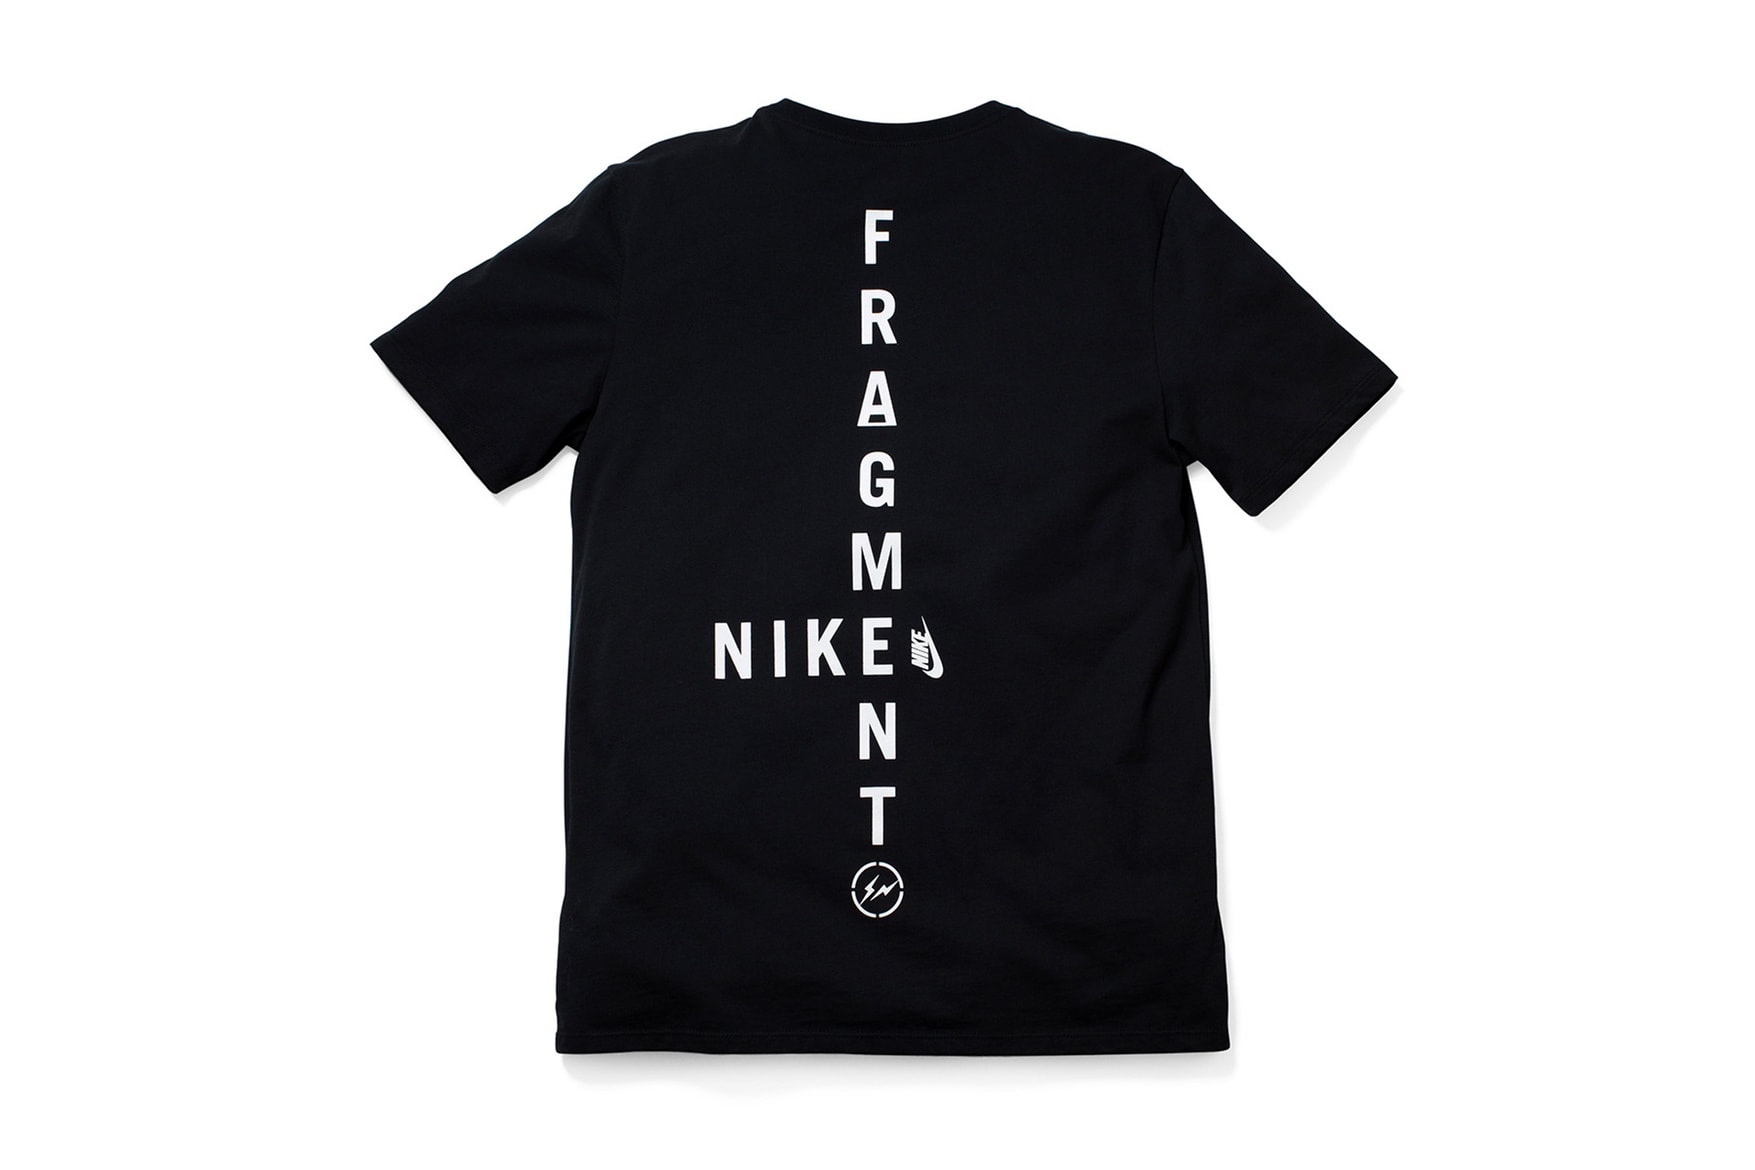 프라그먼트 디자인 도쿄 나이키랩 MA5 티셔츠 2017 fragment design tokyo nikelab t shirts